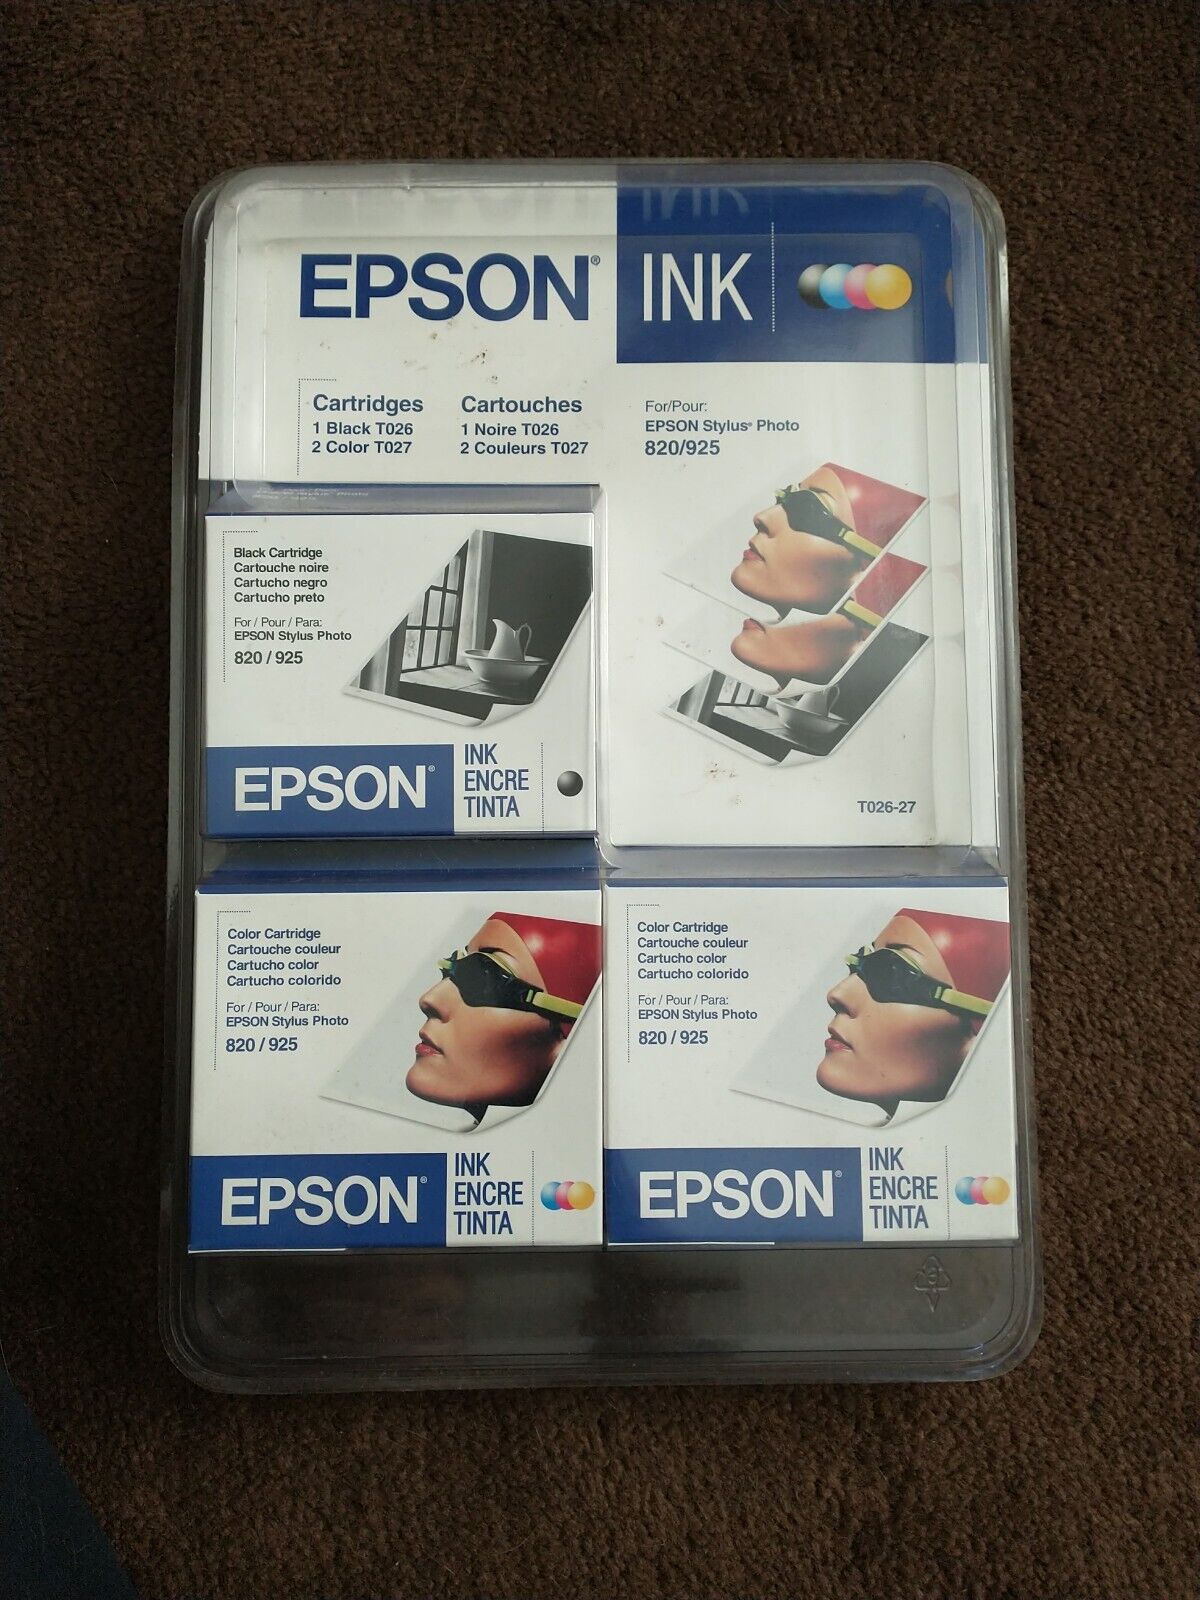 Epson Stylus 820 925 Black & Color Inkjet Print Cartridges Kit, Expired 07/2008